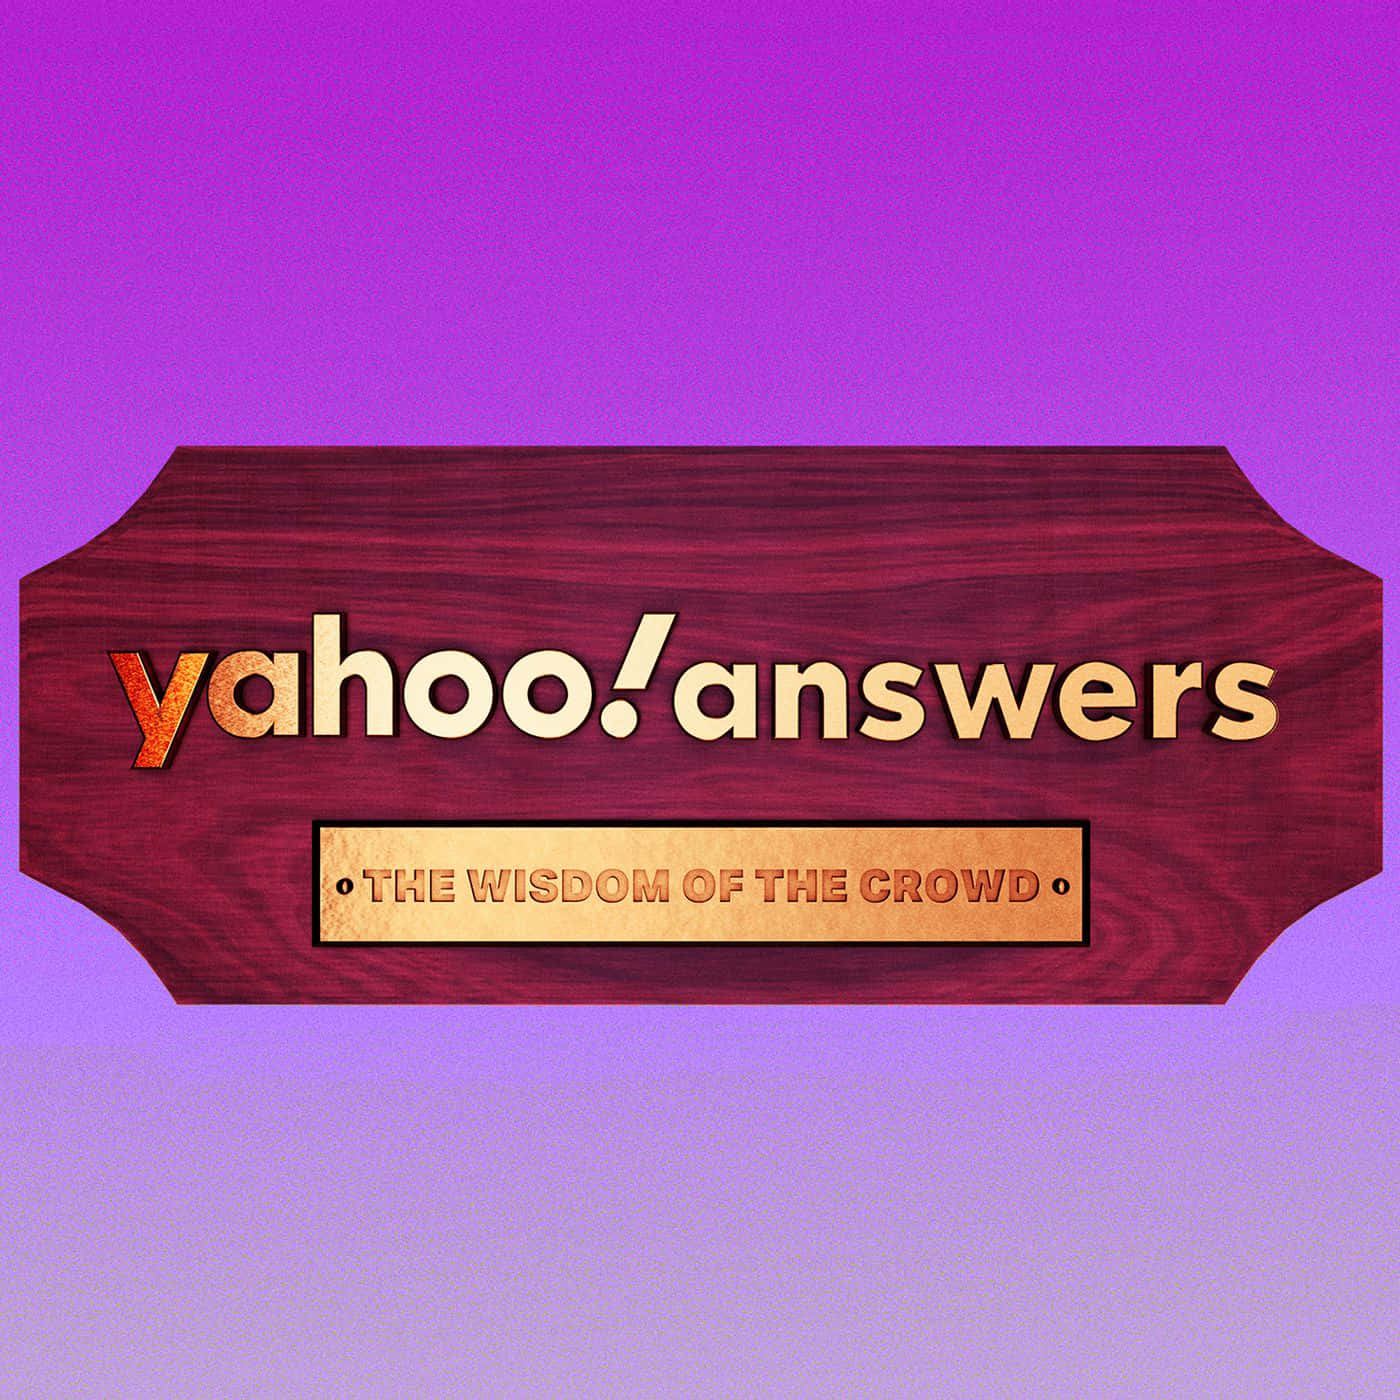 Obténlas Últimas Noticias, Deportes Y Finanzas En Yahoo!